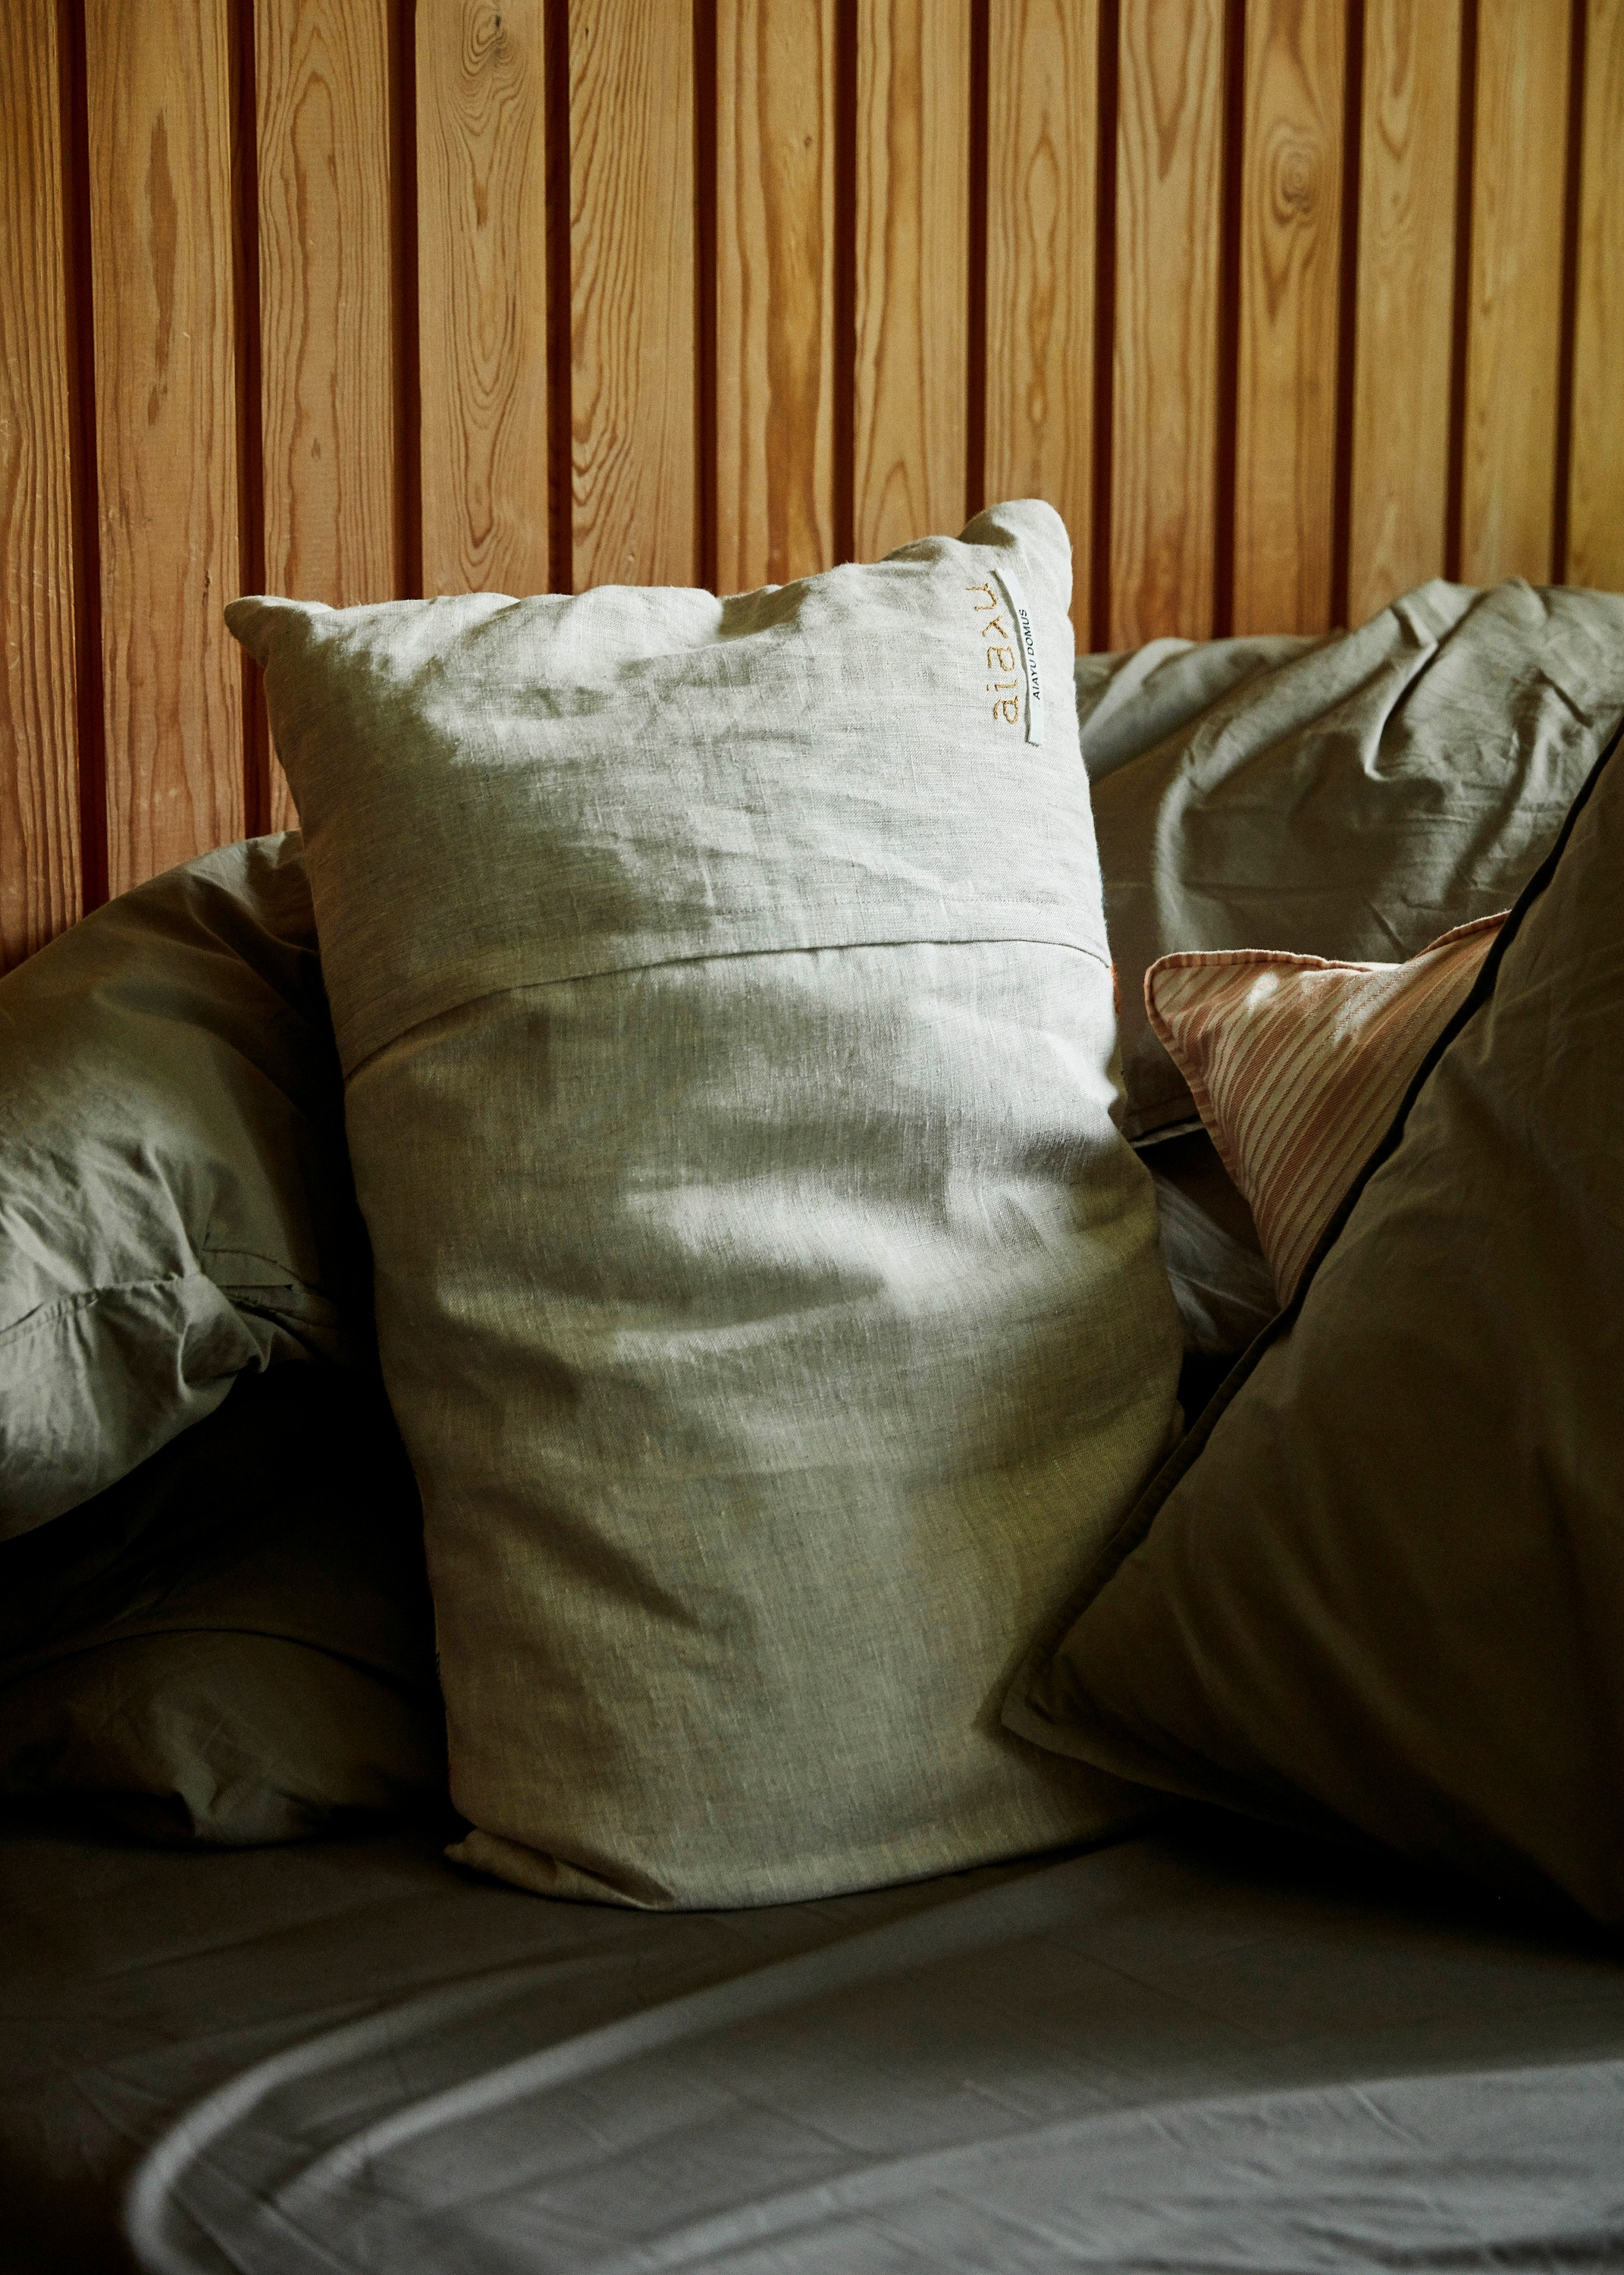 Cushions - Gabriel pillow (40x60)